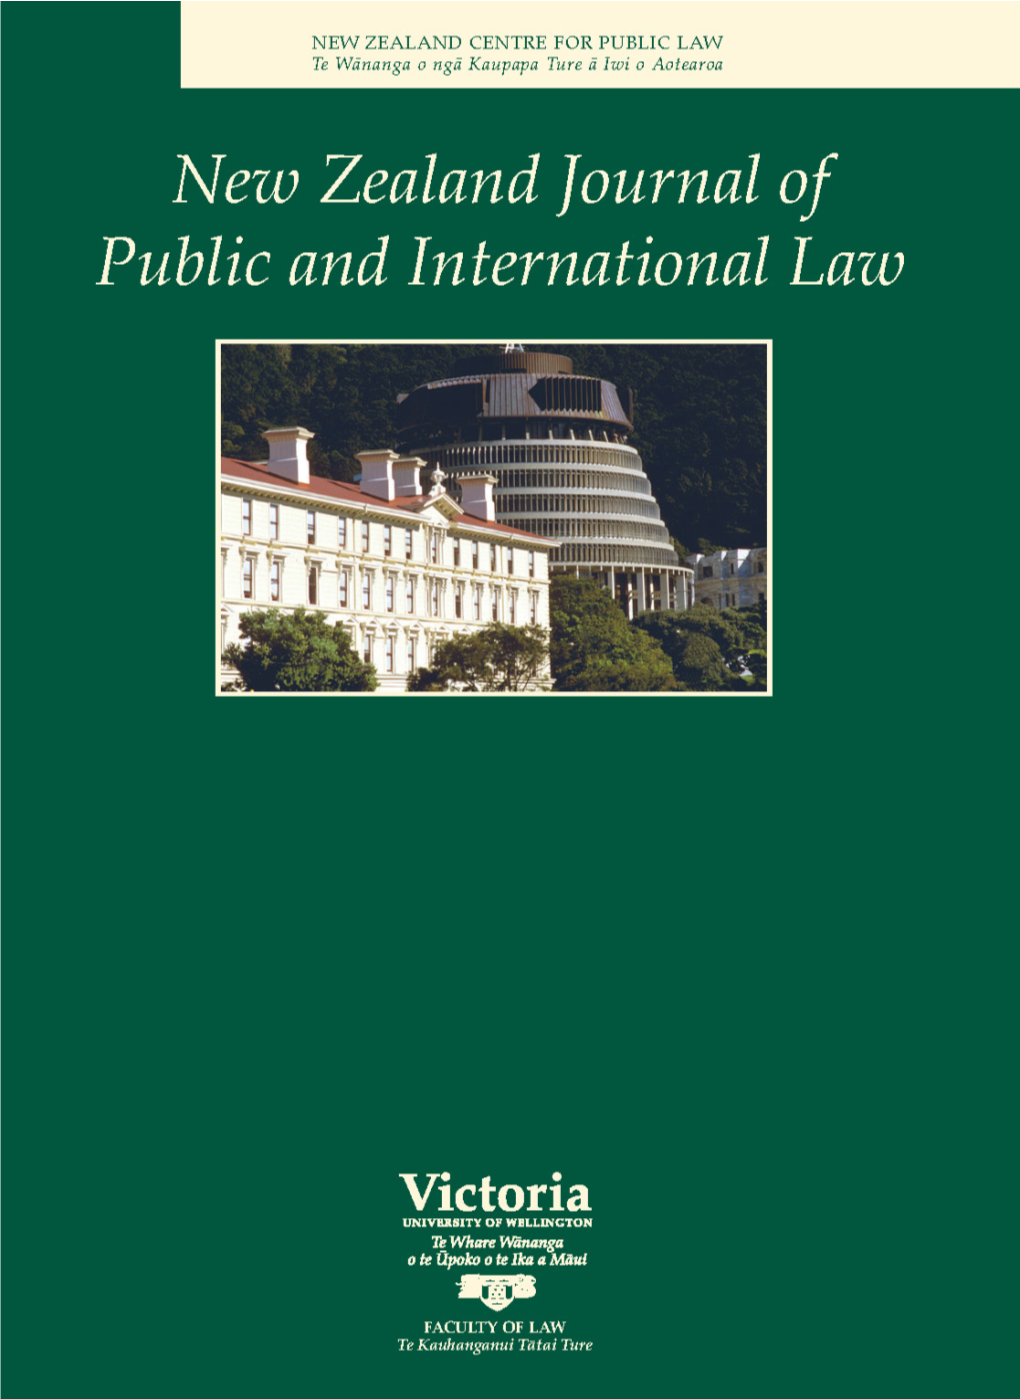 Public Law in New Zealand K J Keith